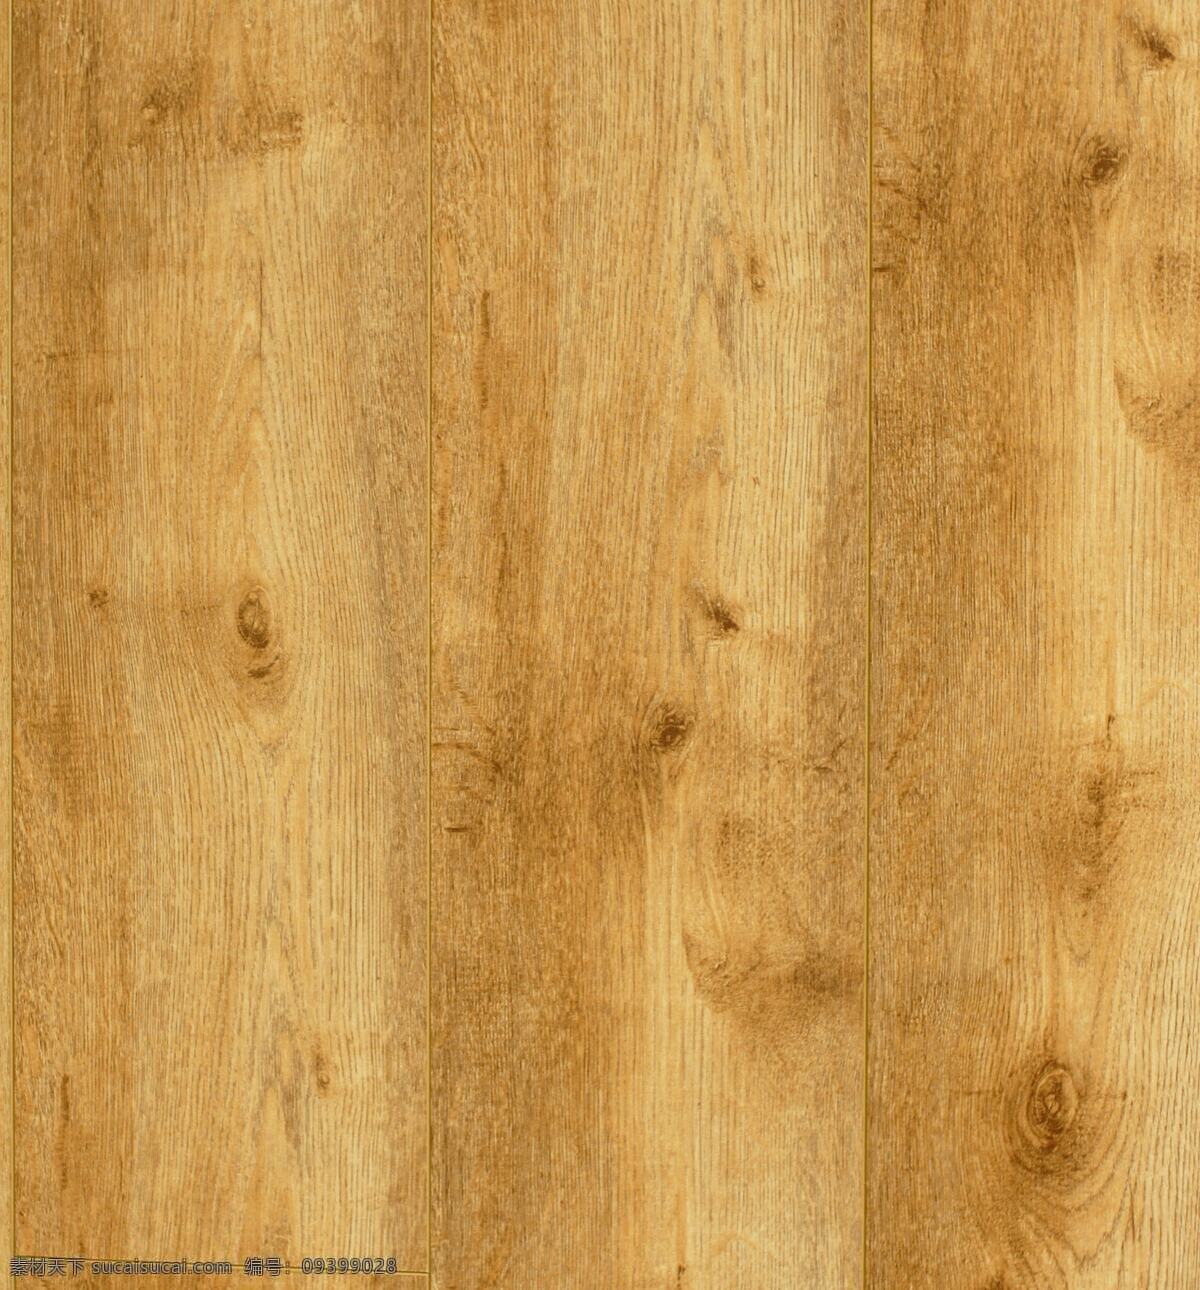 金丝橡木地板 地板 实木地板 地板贴图 地板材质 家装素材 装修素材 装修装饰 木纹贴图 木纹装饰 木纹图案 生活百科 生活素材